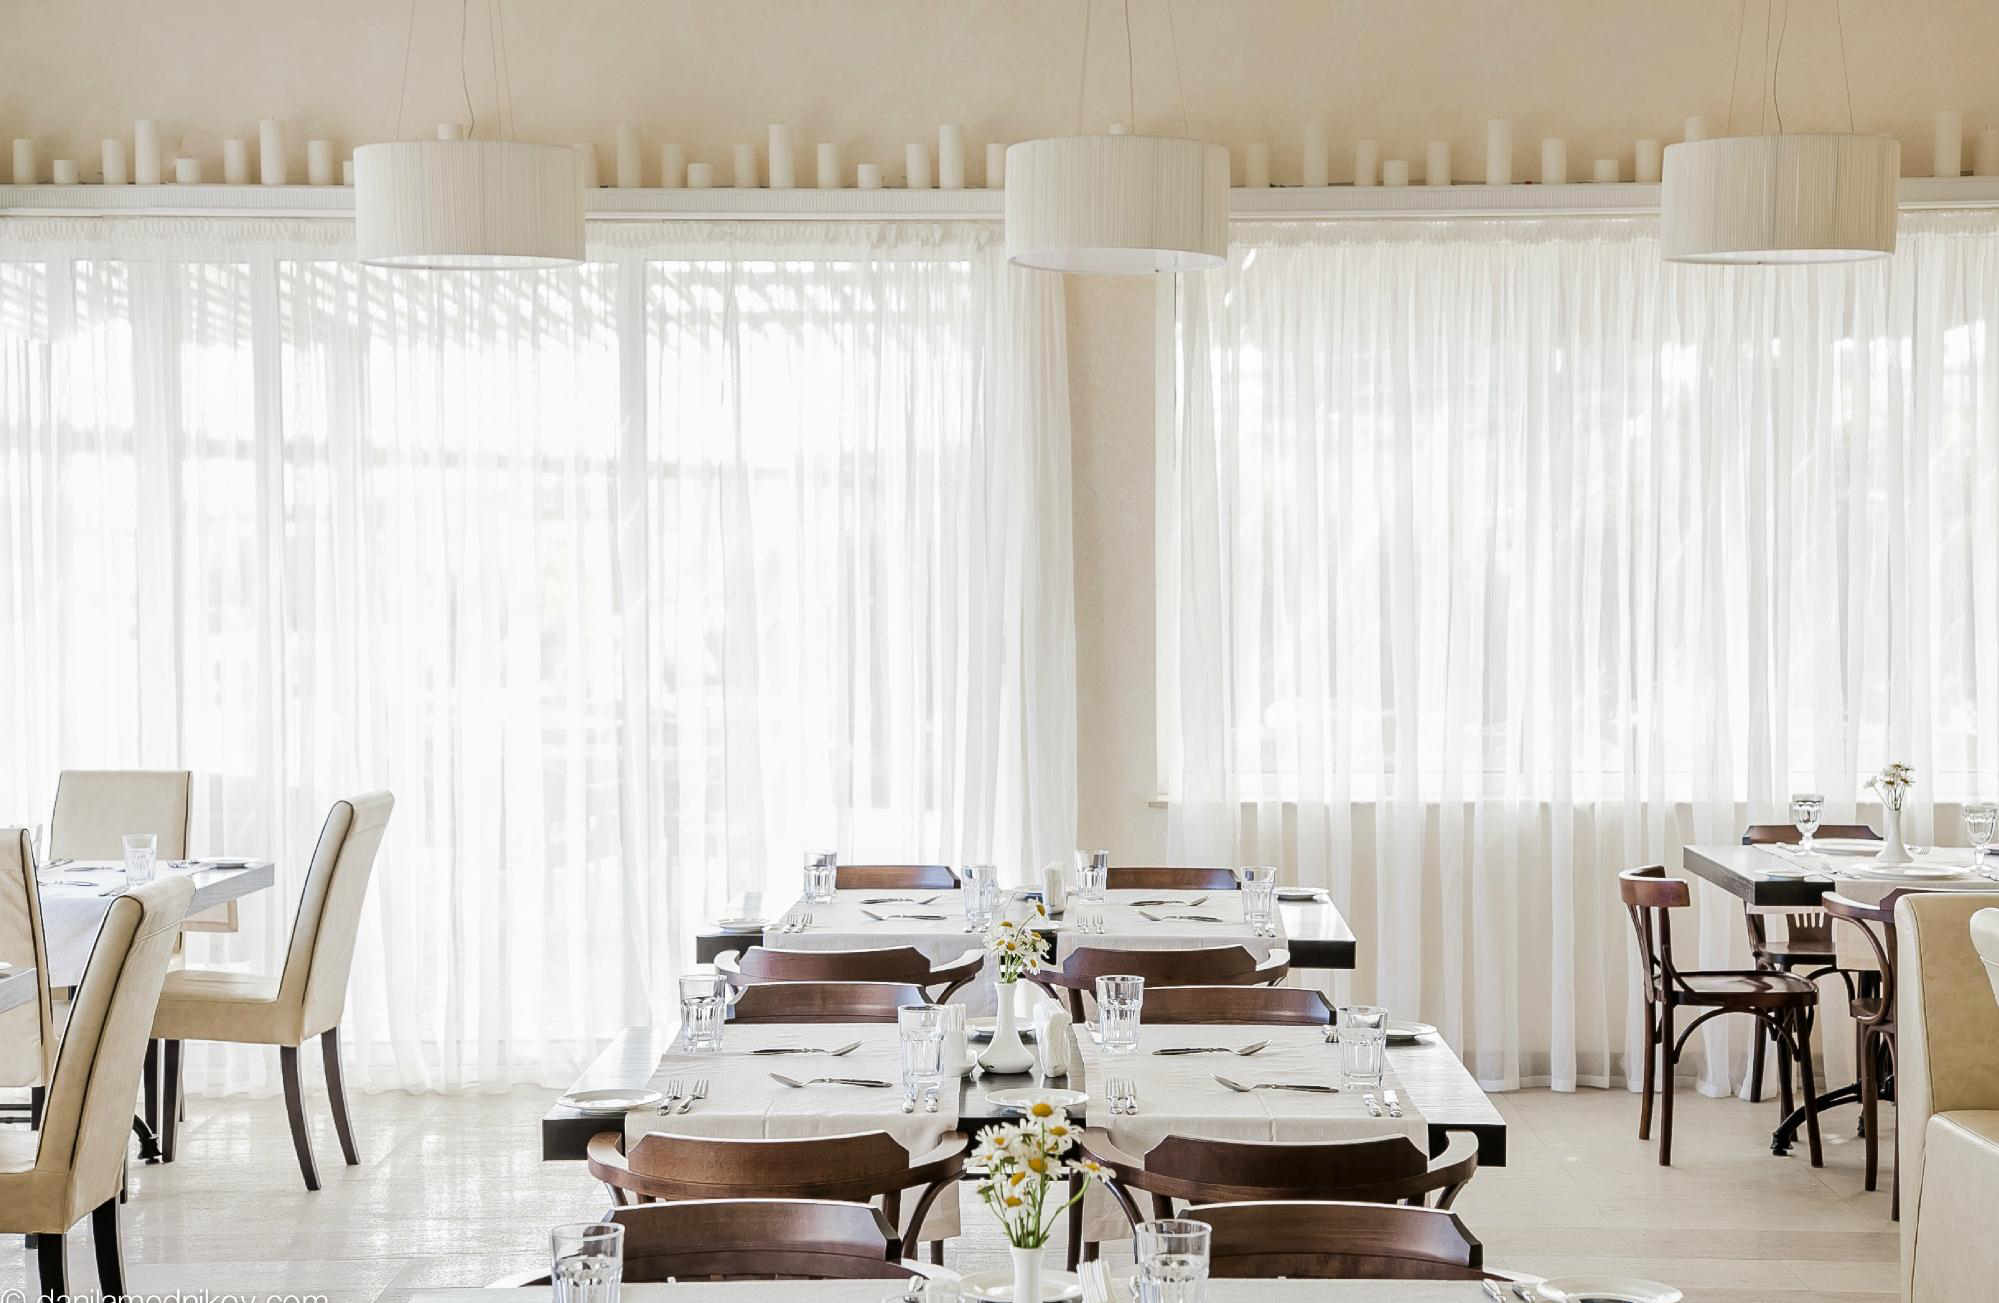 Студия Инны Бажан рекомендует отель "Аквамарин" для проведения вашей незабываемой свадьбы!